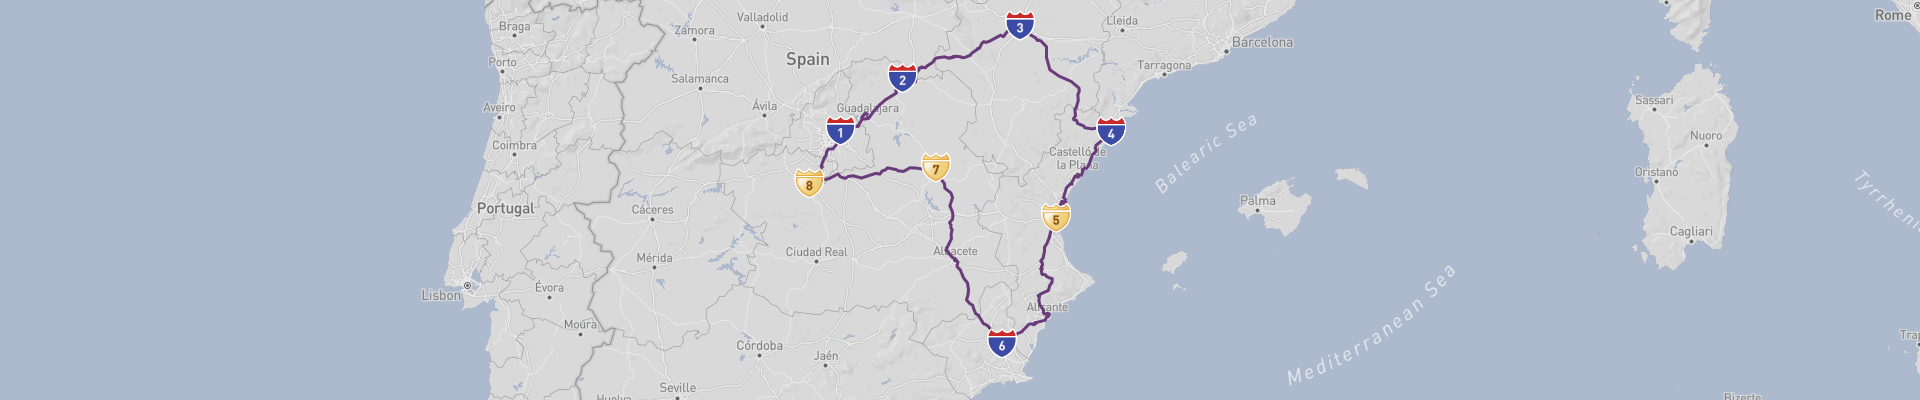 Itinéraire Eastern Spain 